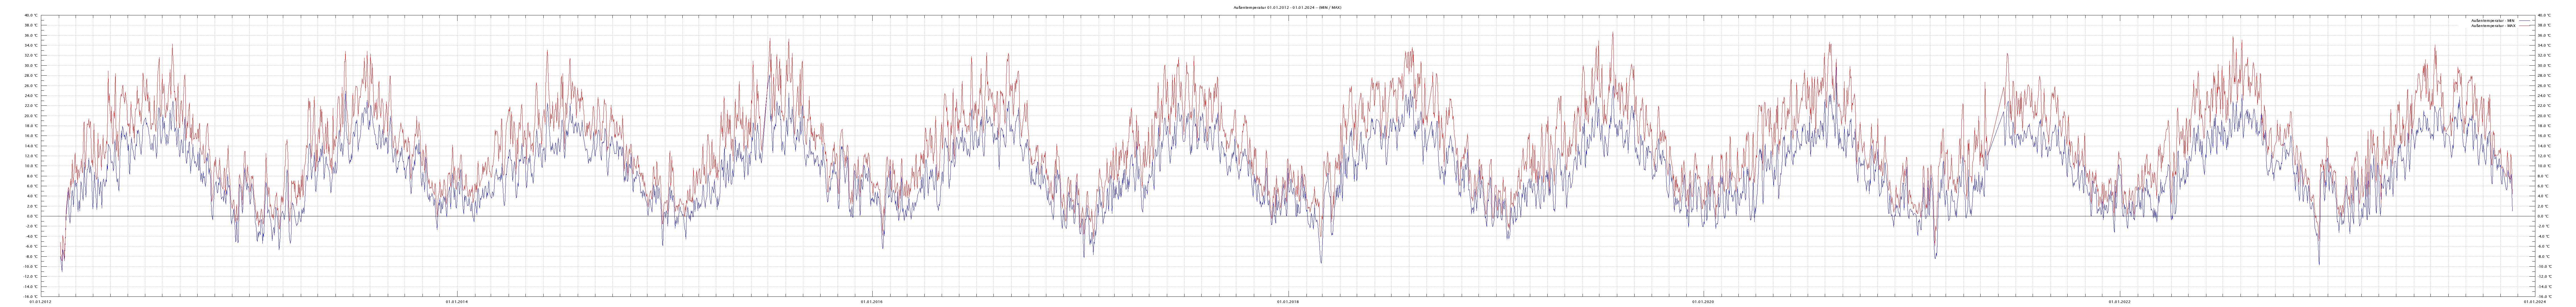 Außentemperatur (min/max) über alle Jahre seit 2012